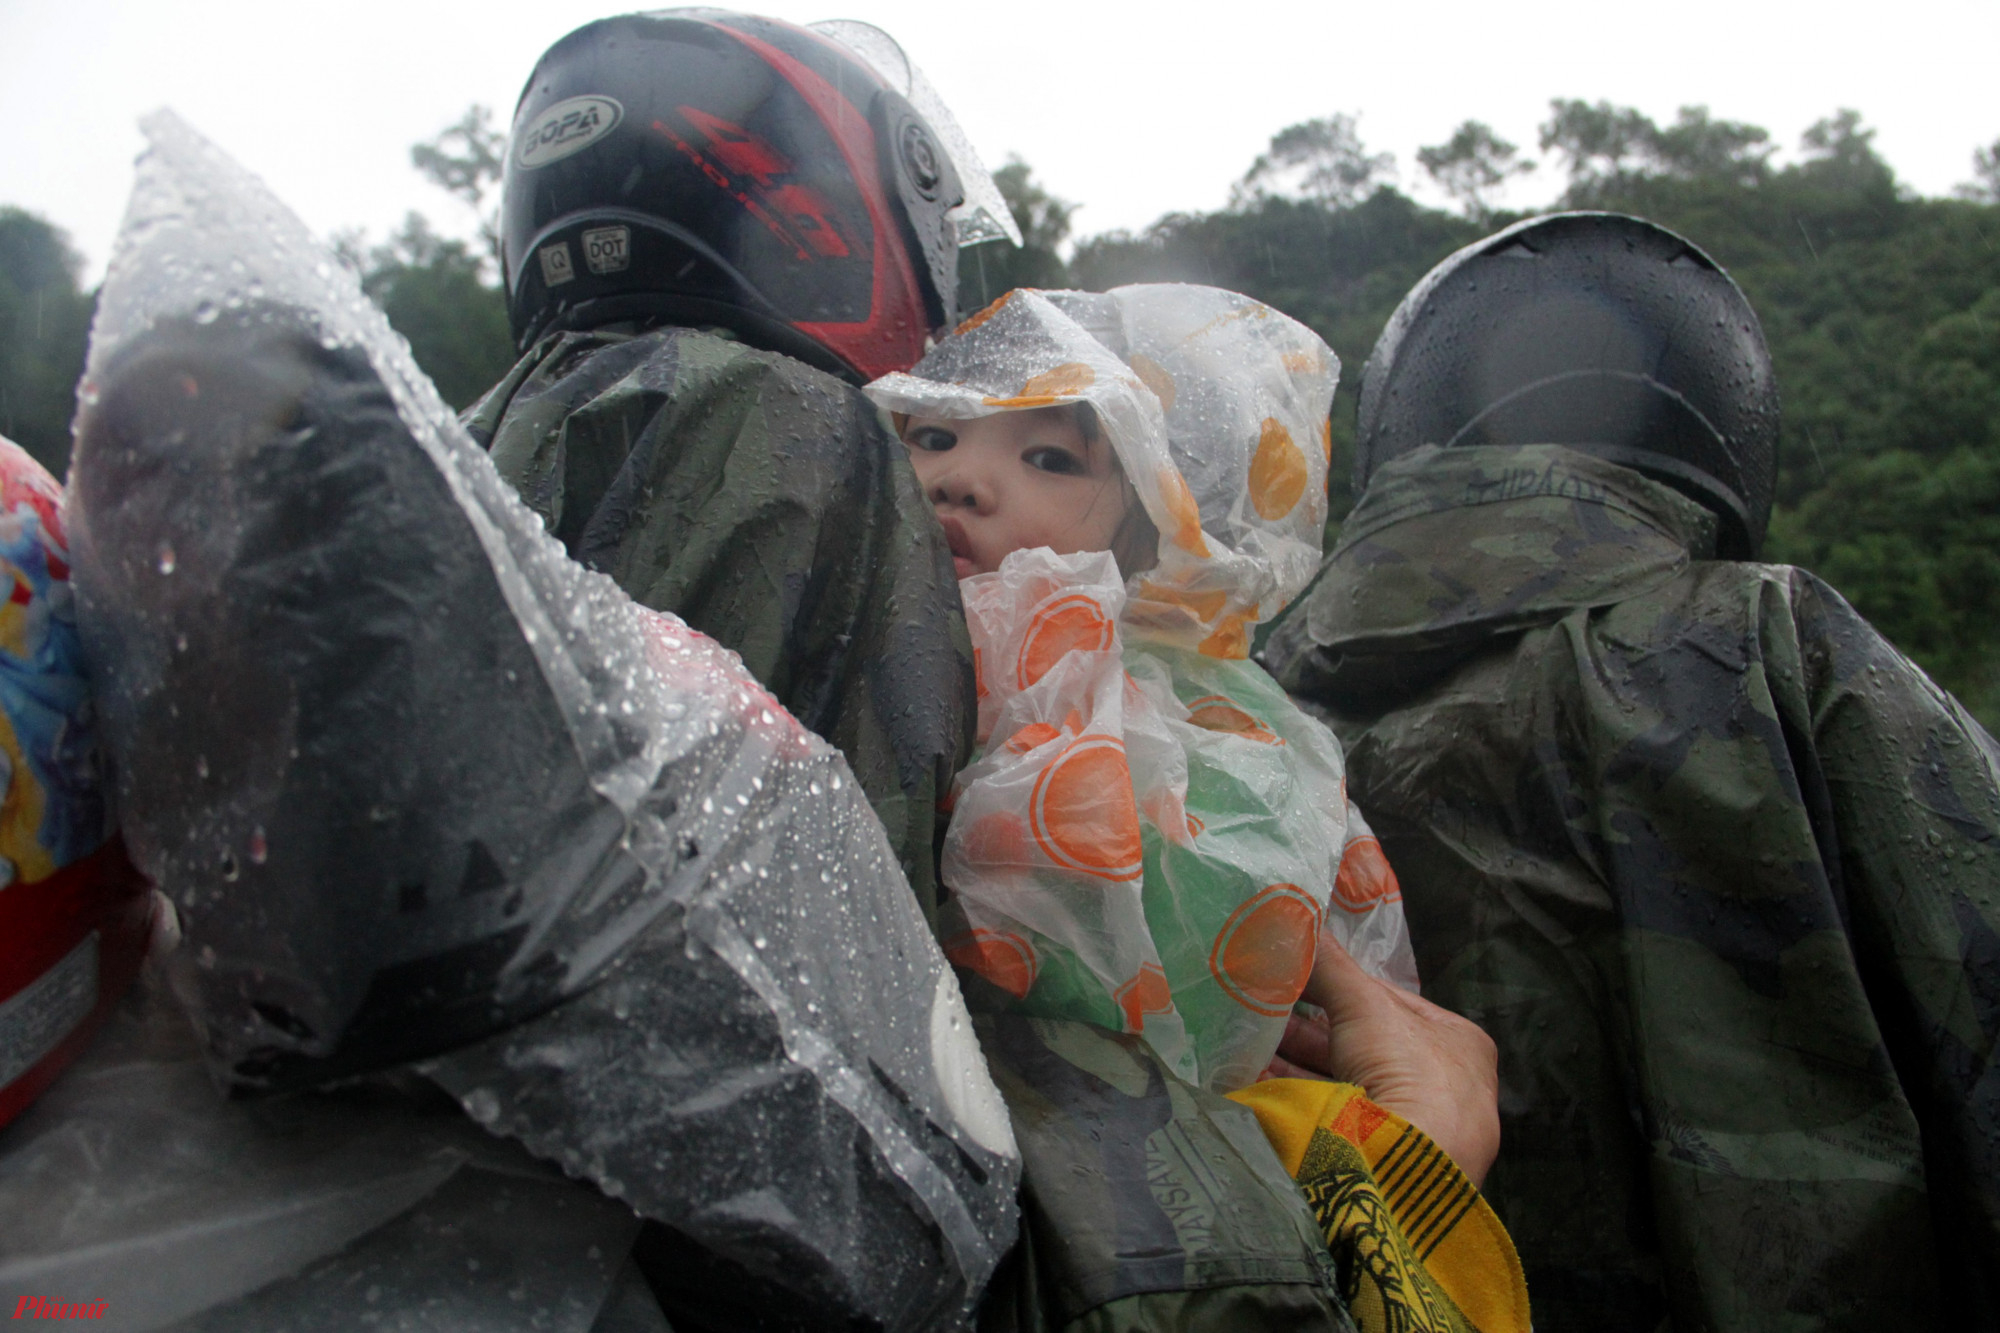 Nhiều đứa trẻ phải ngồi nép mình giữa bố mẹ trong chiếc áo mưa tiện lợi rộng thùng thình.